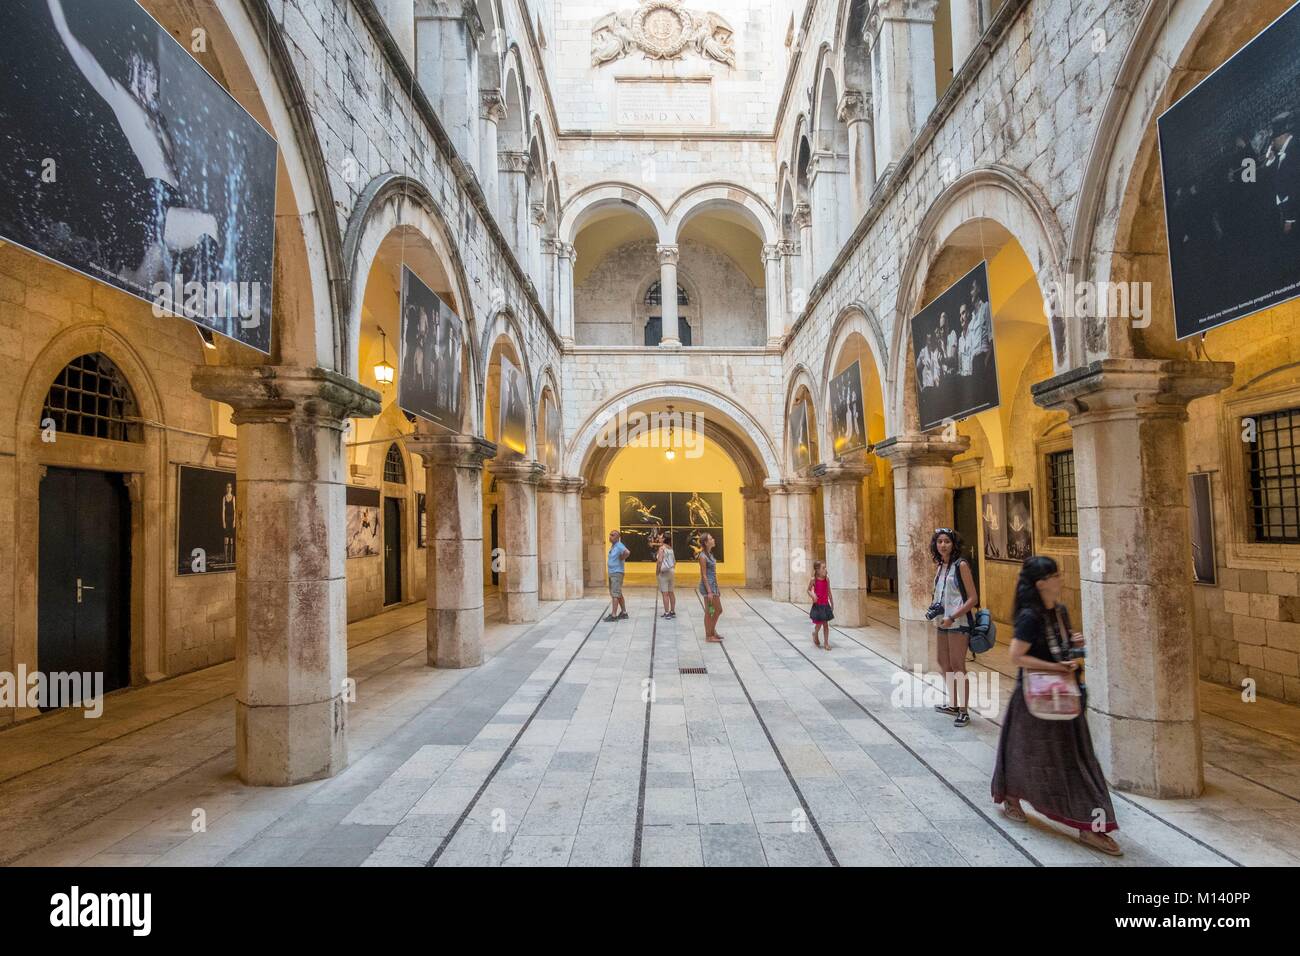 Croatie, Dalmatie Centrale, de la côte dalmate, Dubrovnik, Centre lHistoric inscrite au Patrimoine Mondial de l'UNESCO, le palais Sponza Banque D'Images